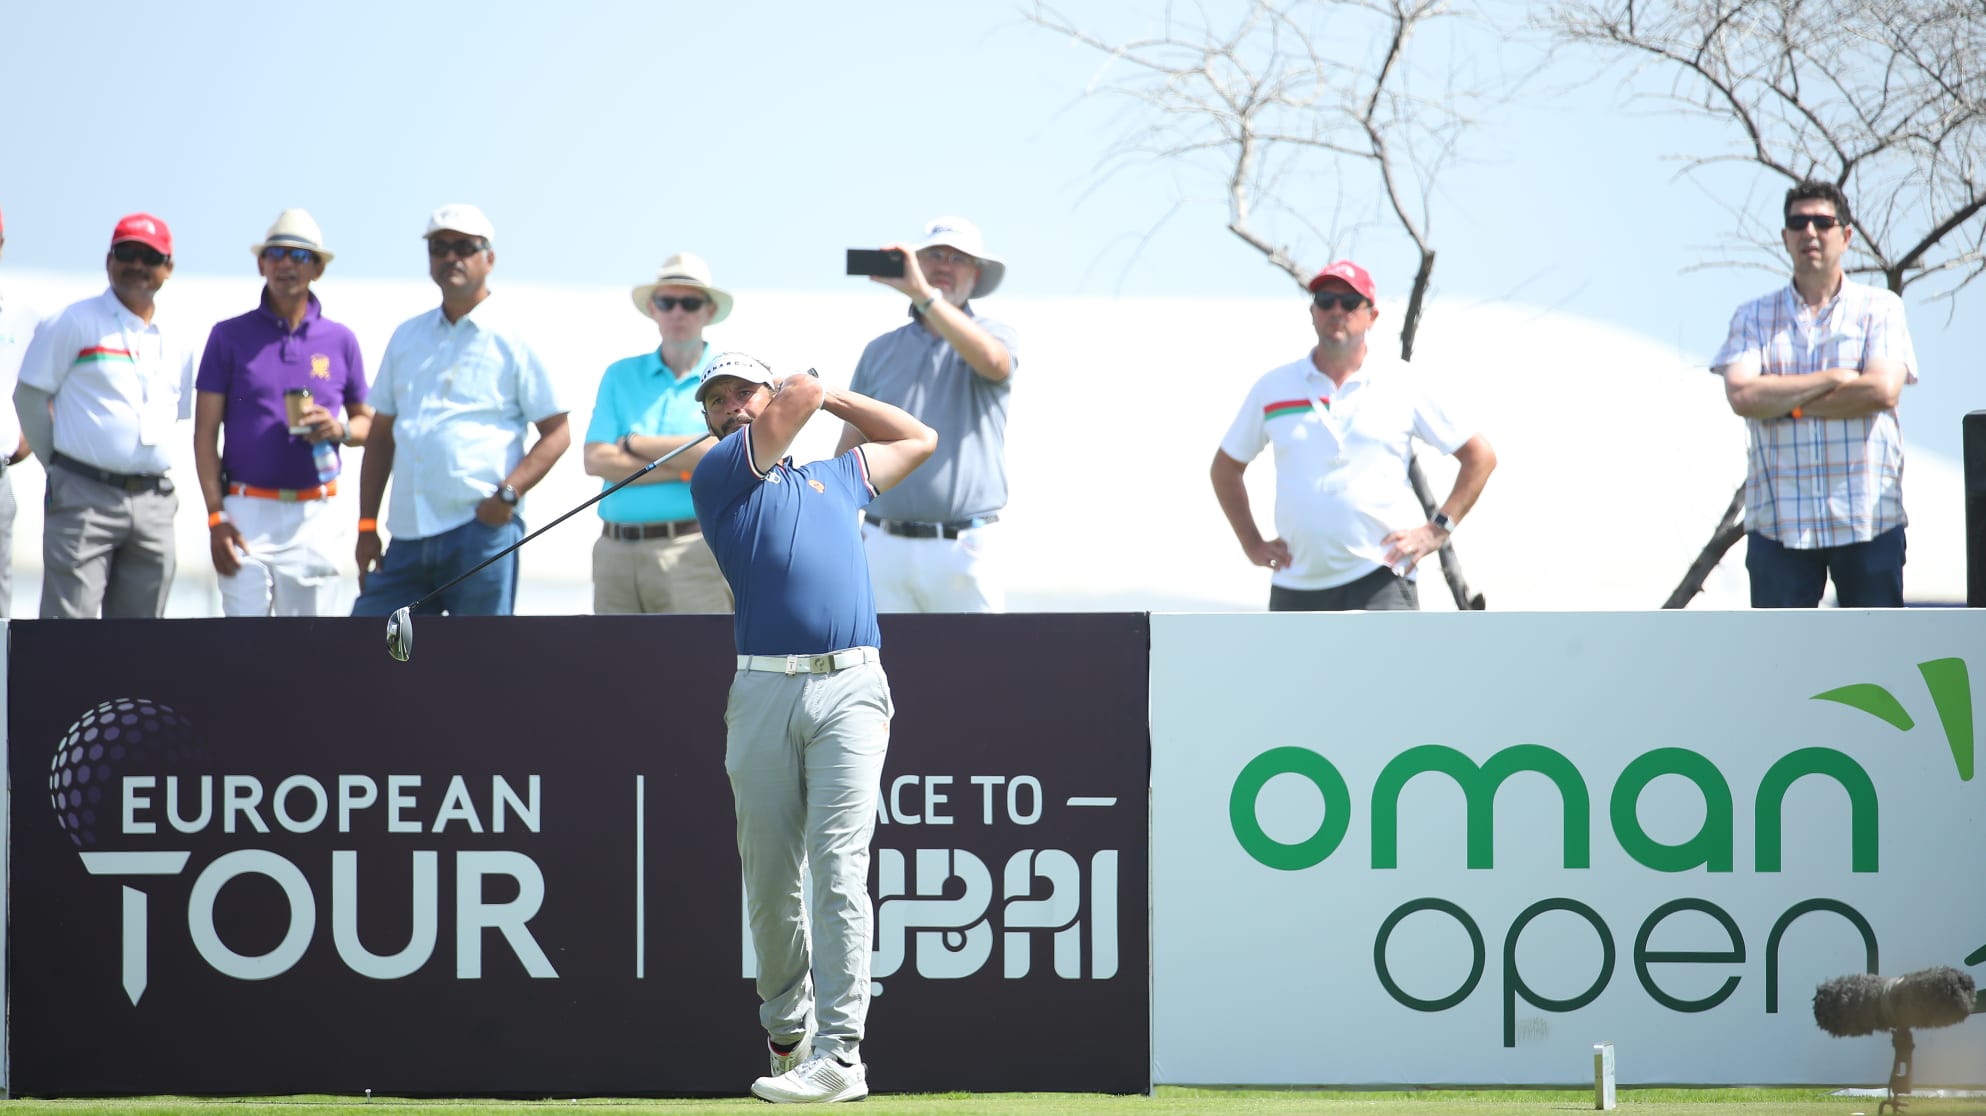 Oman Open 2020 hấp dẫn với 6 golfer cùng dẫn đầu trước vòng chung kết